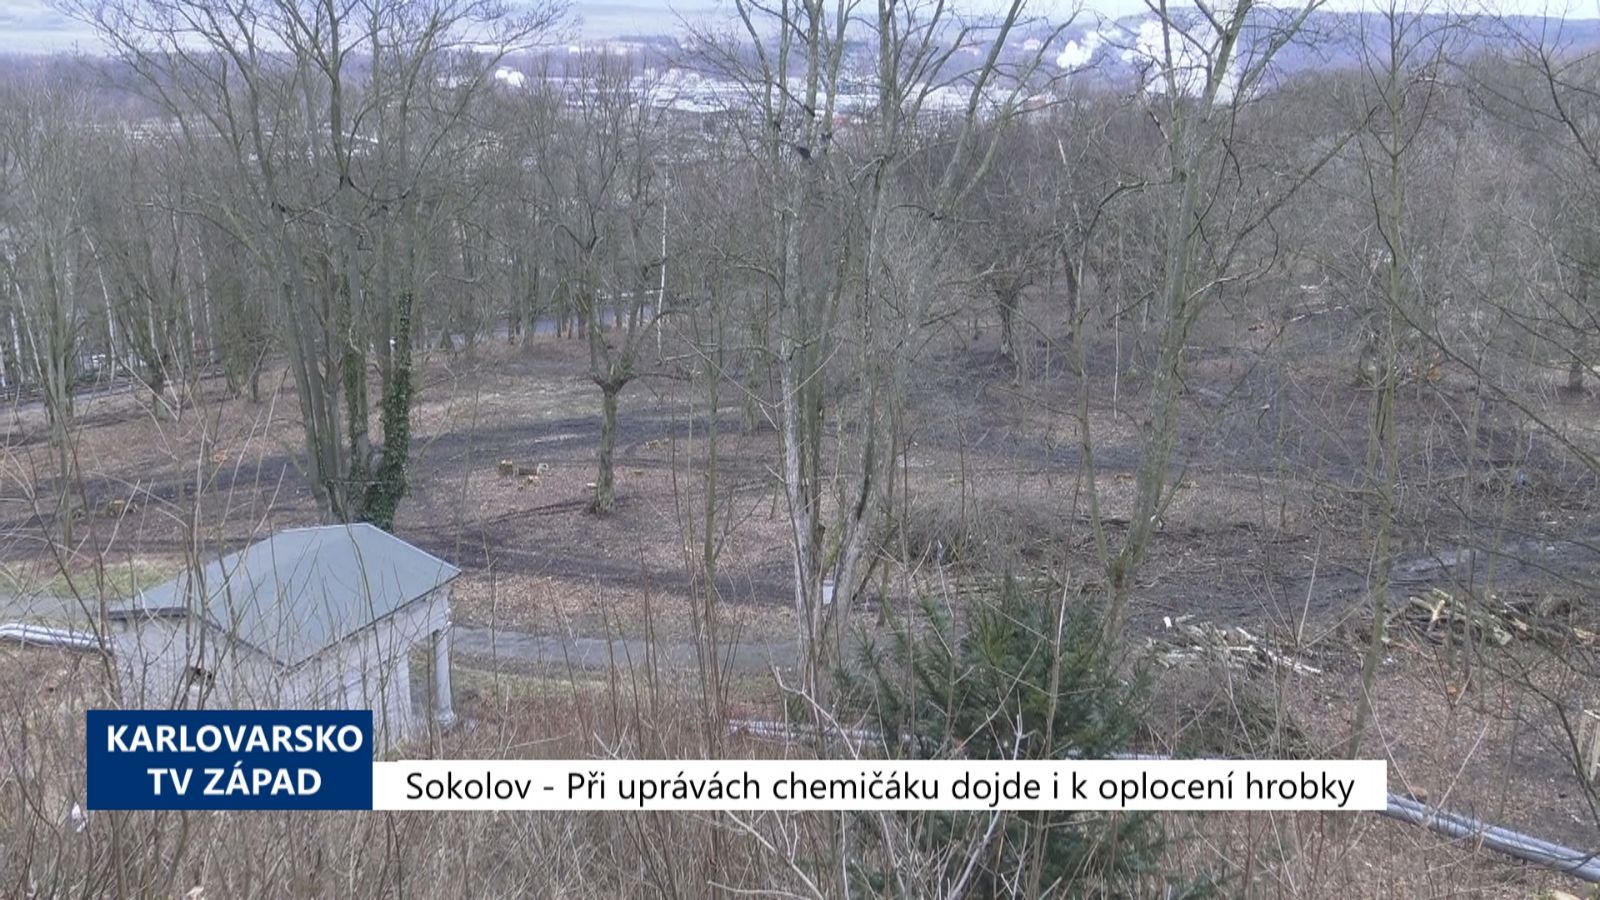 Sokolov: Při úpravách chemičáku dojde i k oplocení hrobky (TV Západ)